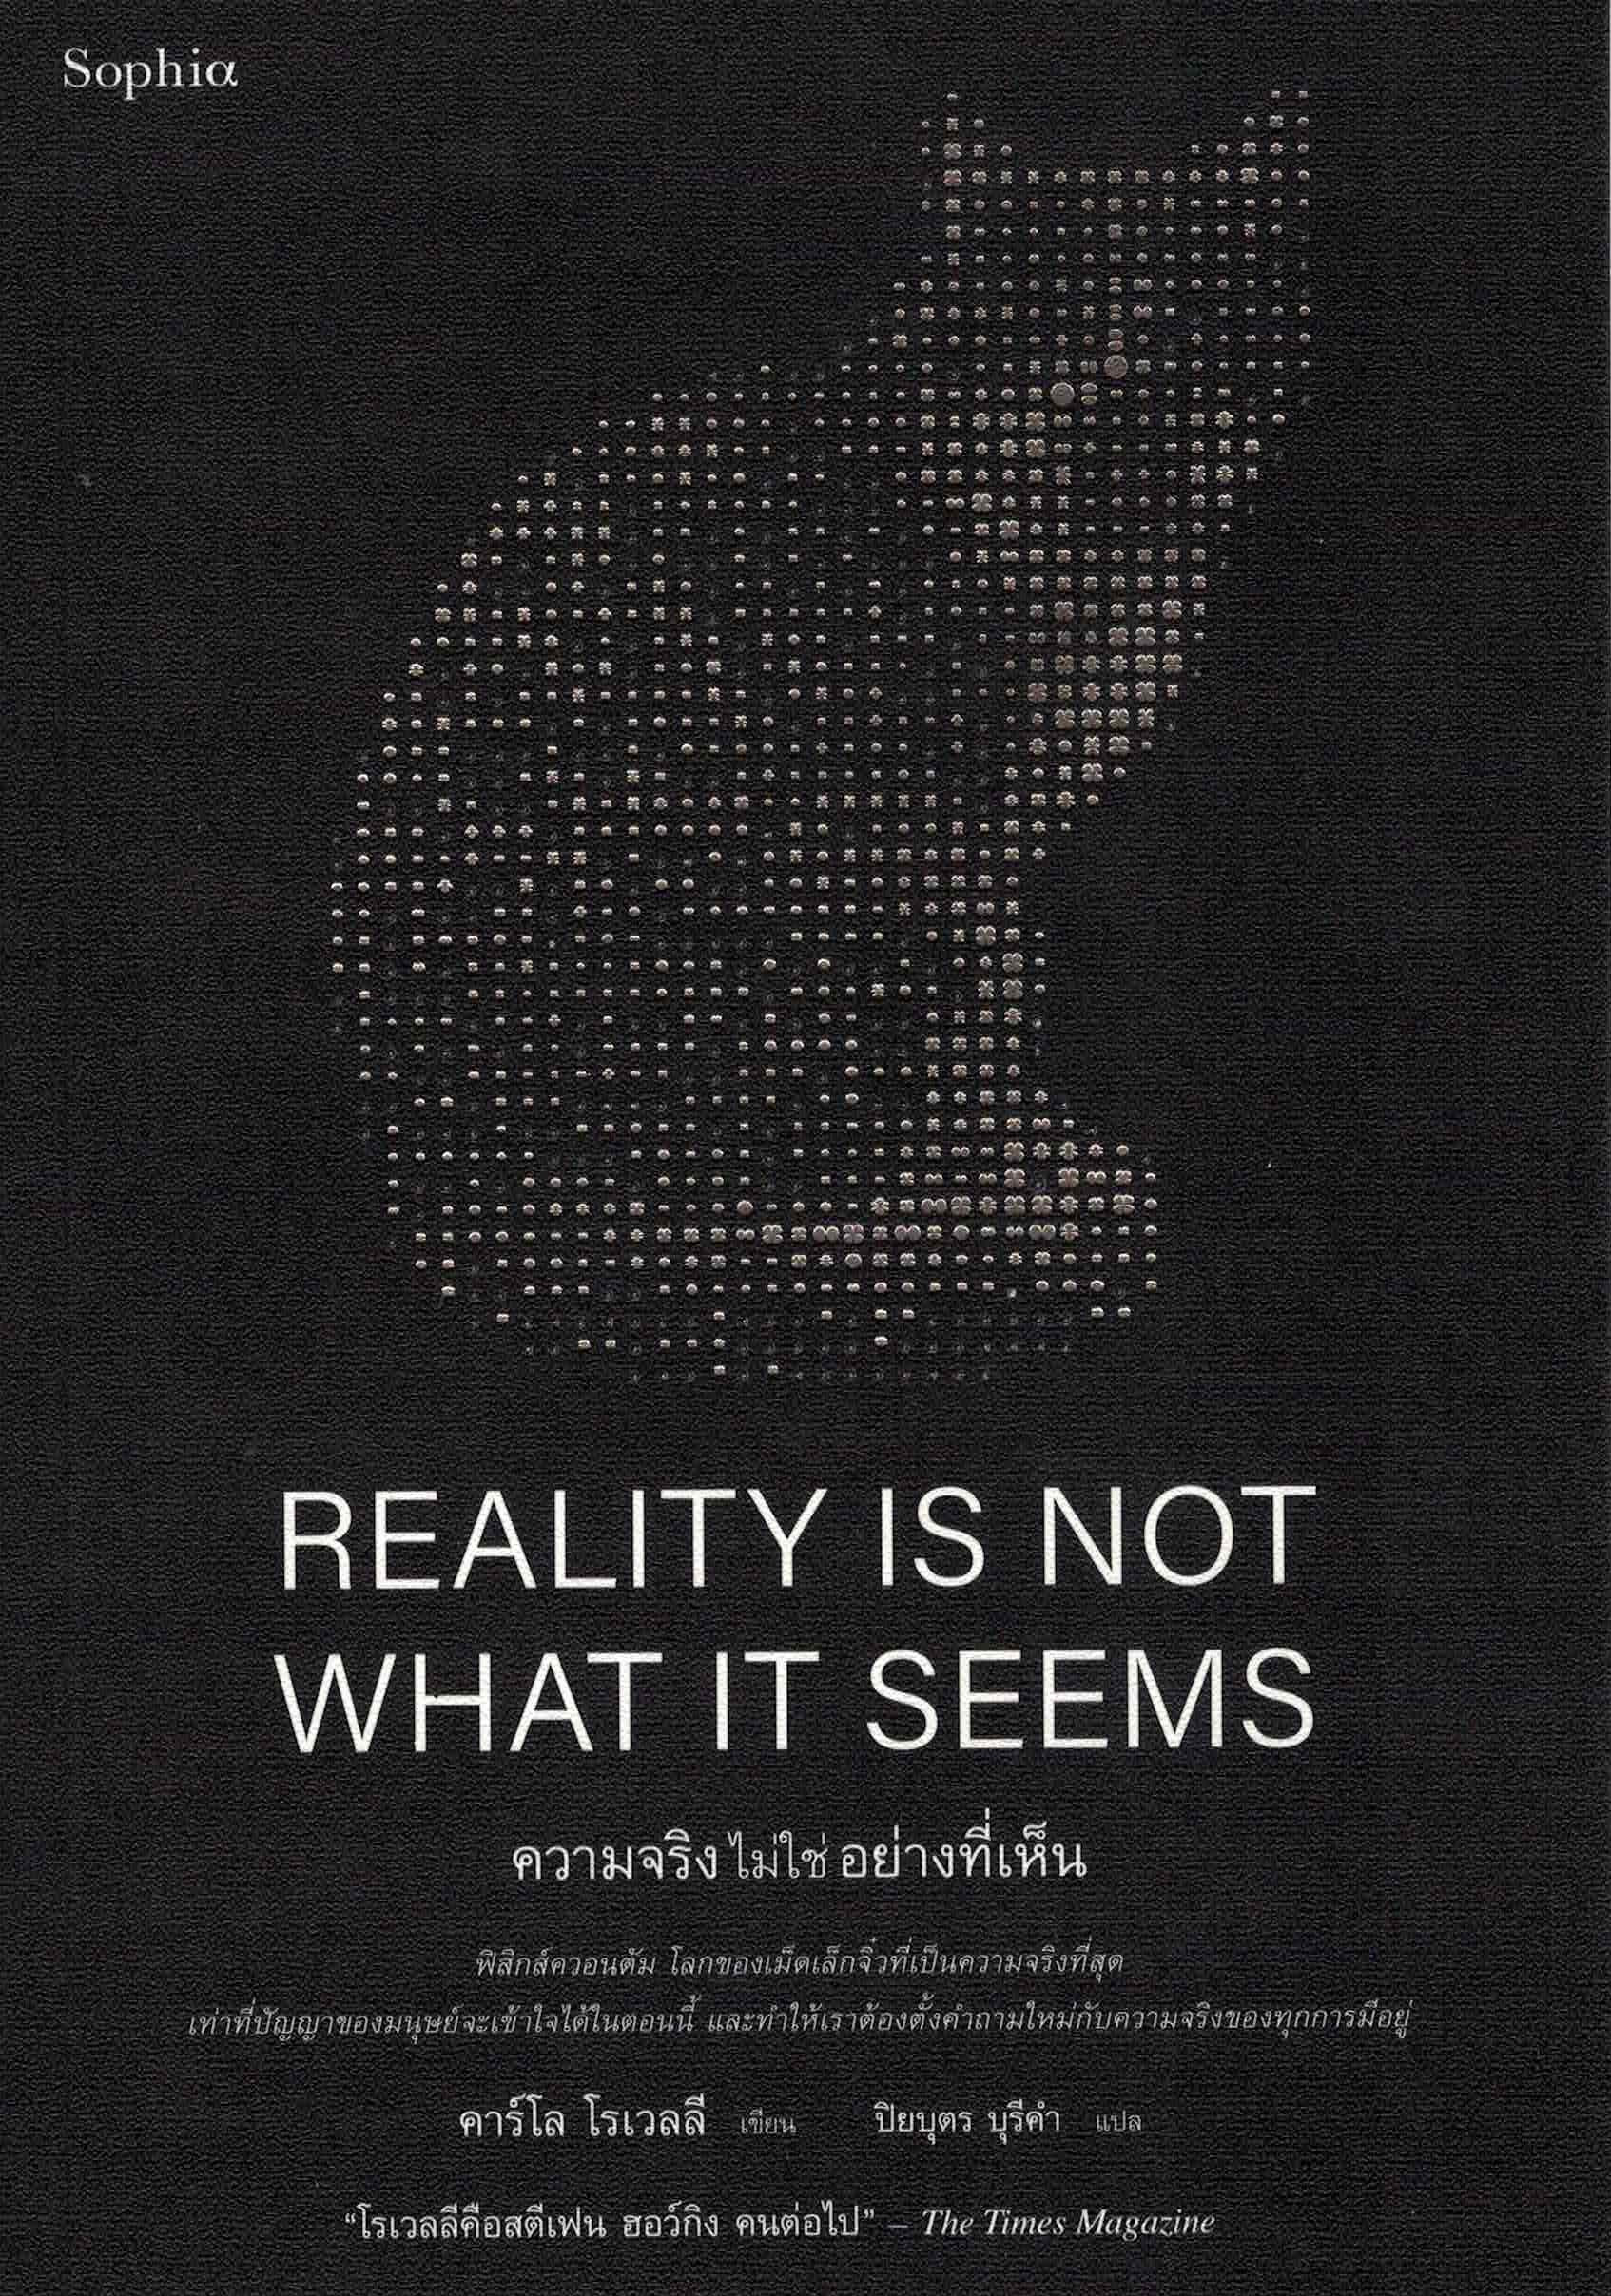 ความจริงไม่ใช่อย่างที่เห็น = Reality is not what it seems